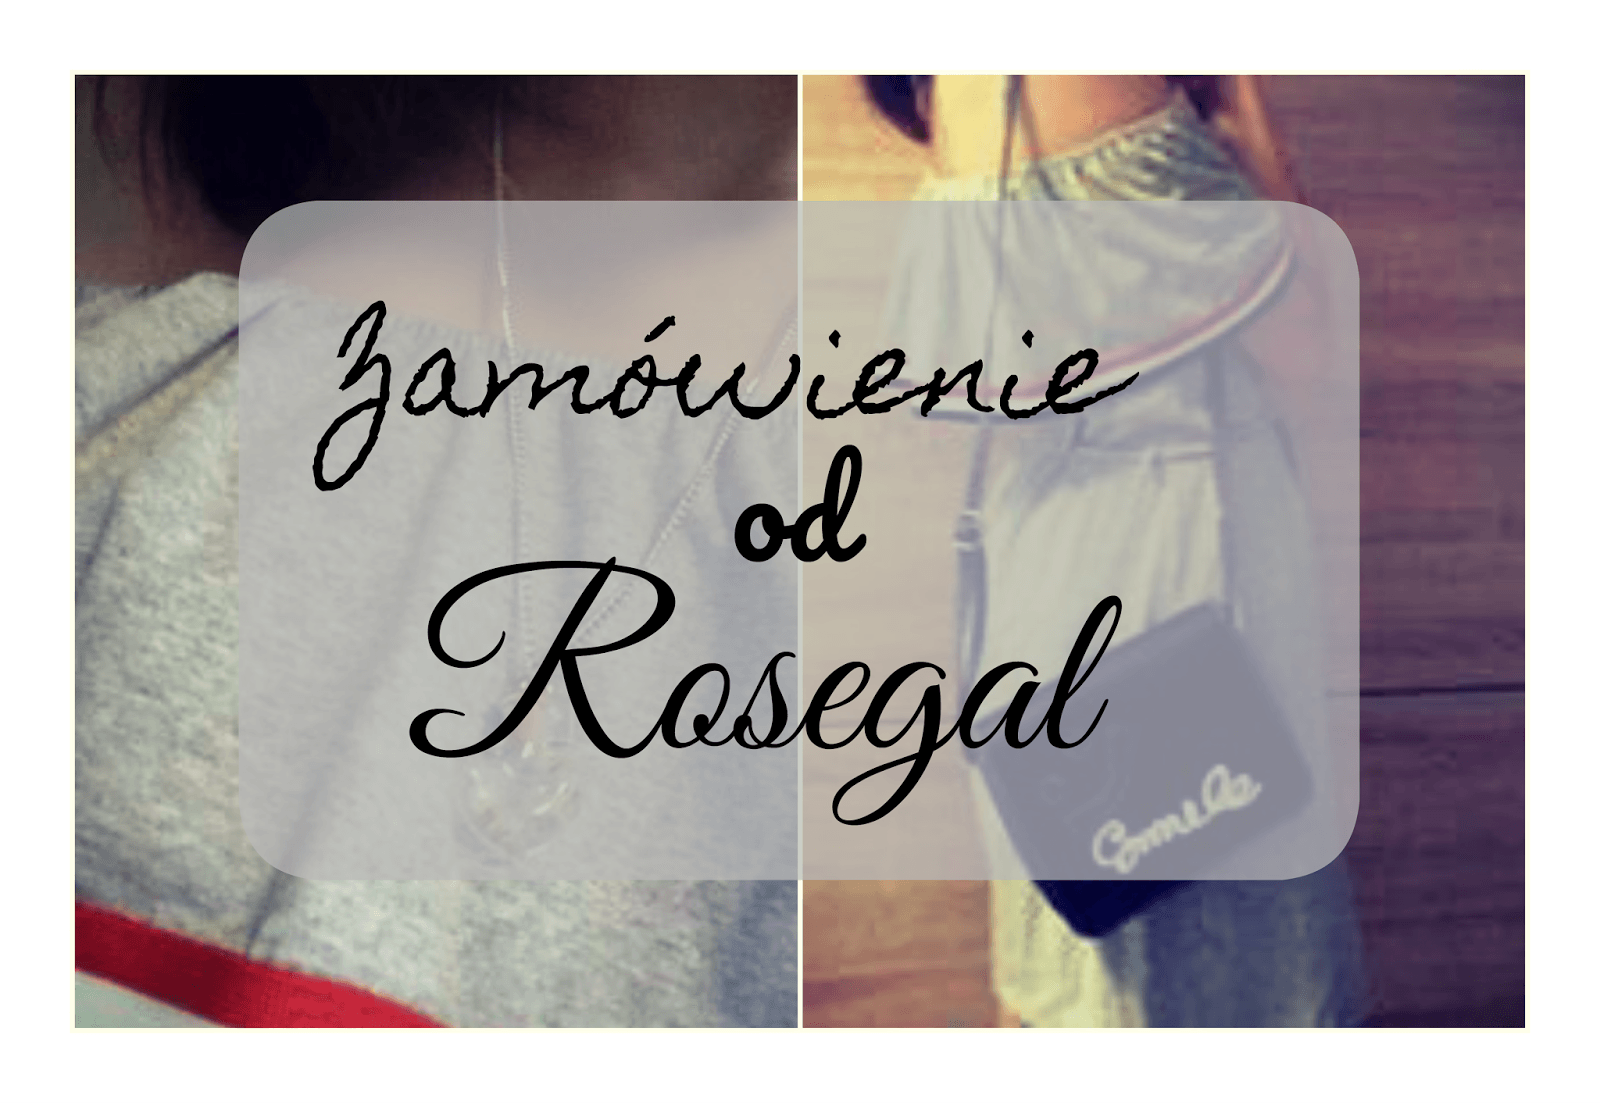 My life is Wonderful: ♥ Zamówienie od Rosegal ♥